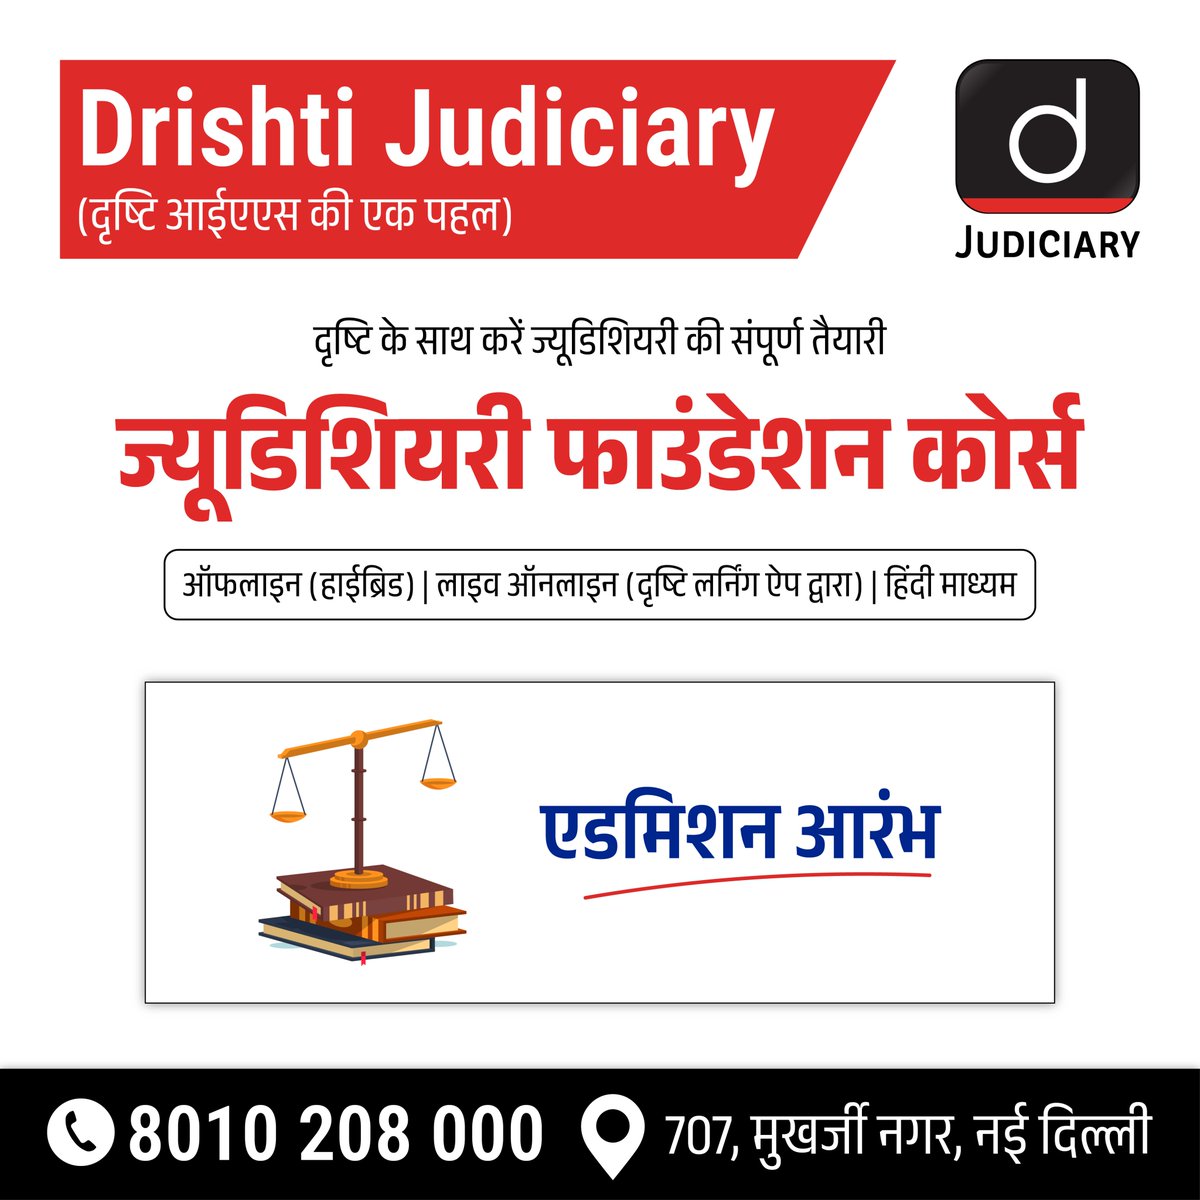 दृष्टि ज्यूडिशियरी फाउंडेशन कोर्स! . अपनी सीट बुक करने के लिये क्लिक करें: drishti.xyz/Registration-J… . विस्तृत जानकारी के लिये कॉल बैक फॉर्म भरें: drishti.xyz/Callback-Judic… #JudicialServices #Foundation #Law #LawStudents #IndianJudiciary #LegalStudies #Constitution #DrishtiJudiciary